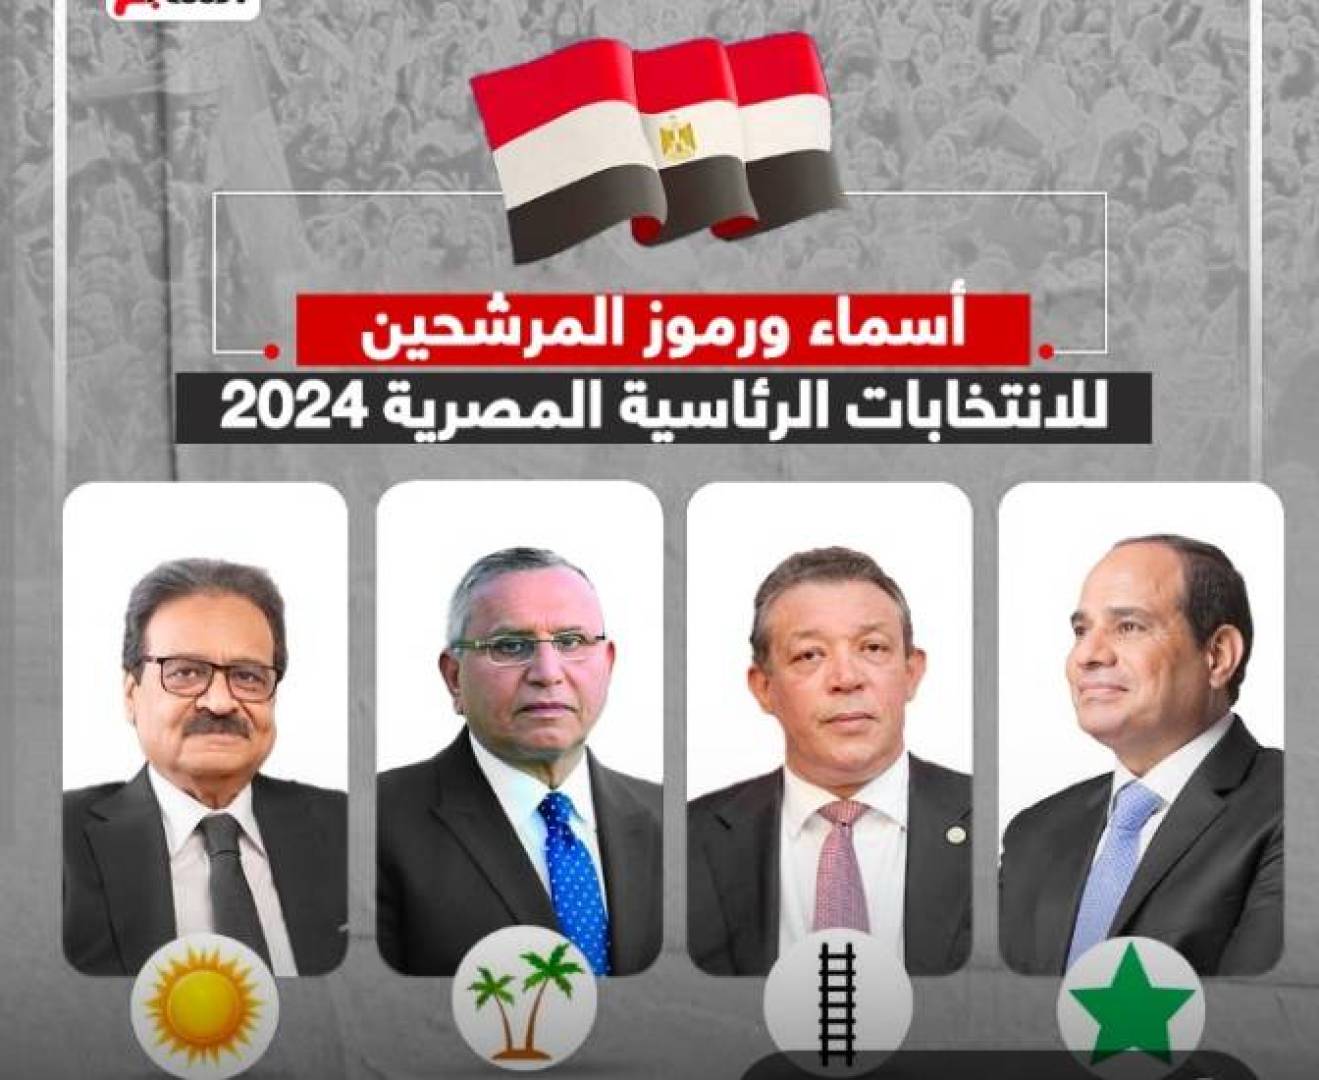 النتائج الأولية للانتخابات الرئاسية في مصر